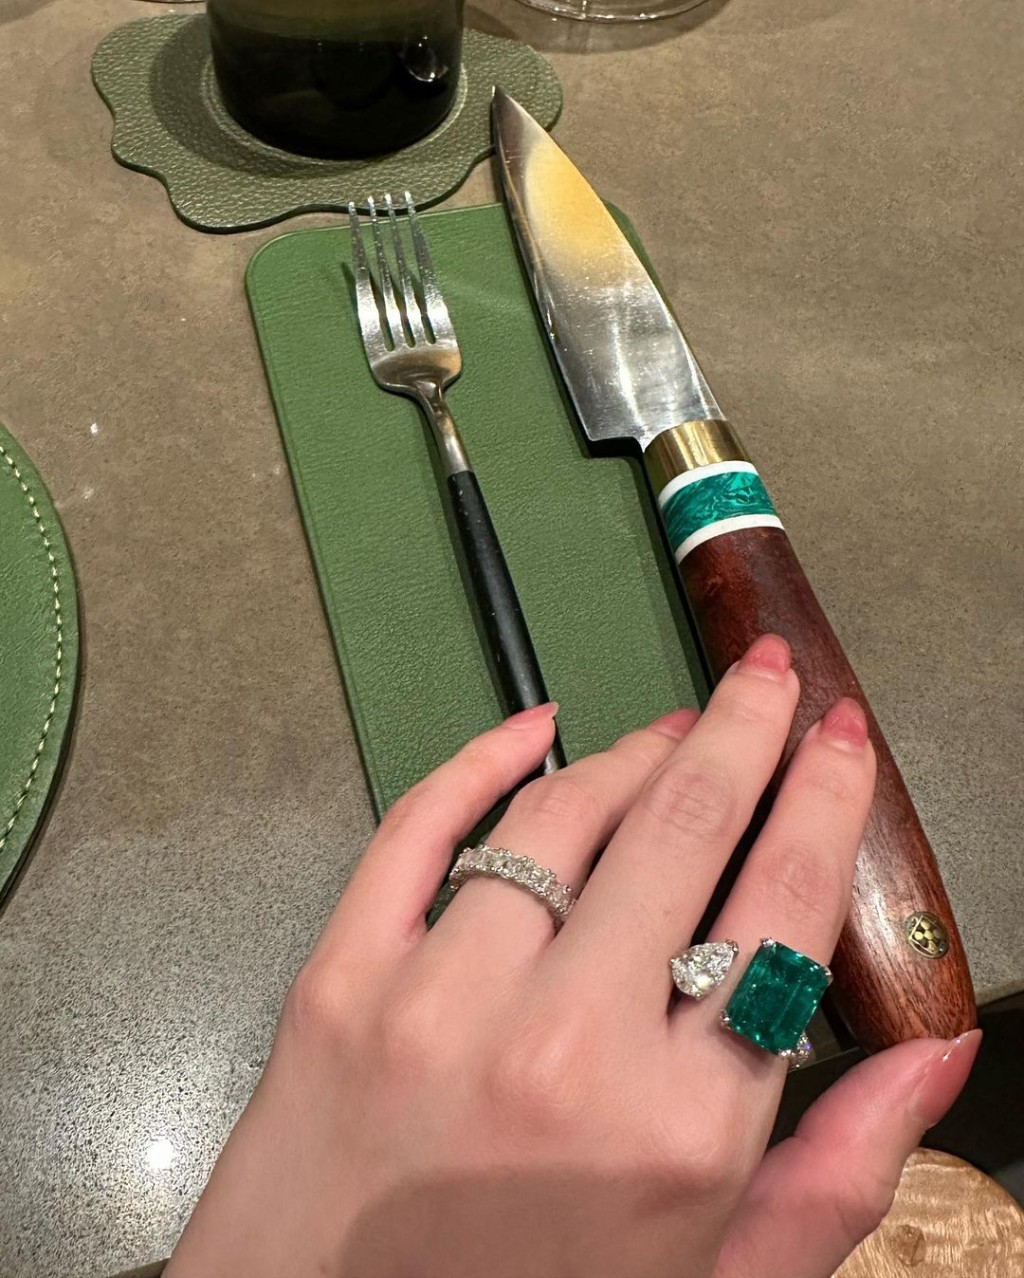 陳雪鈴戴巨型綠寶石戒指開餐。